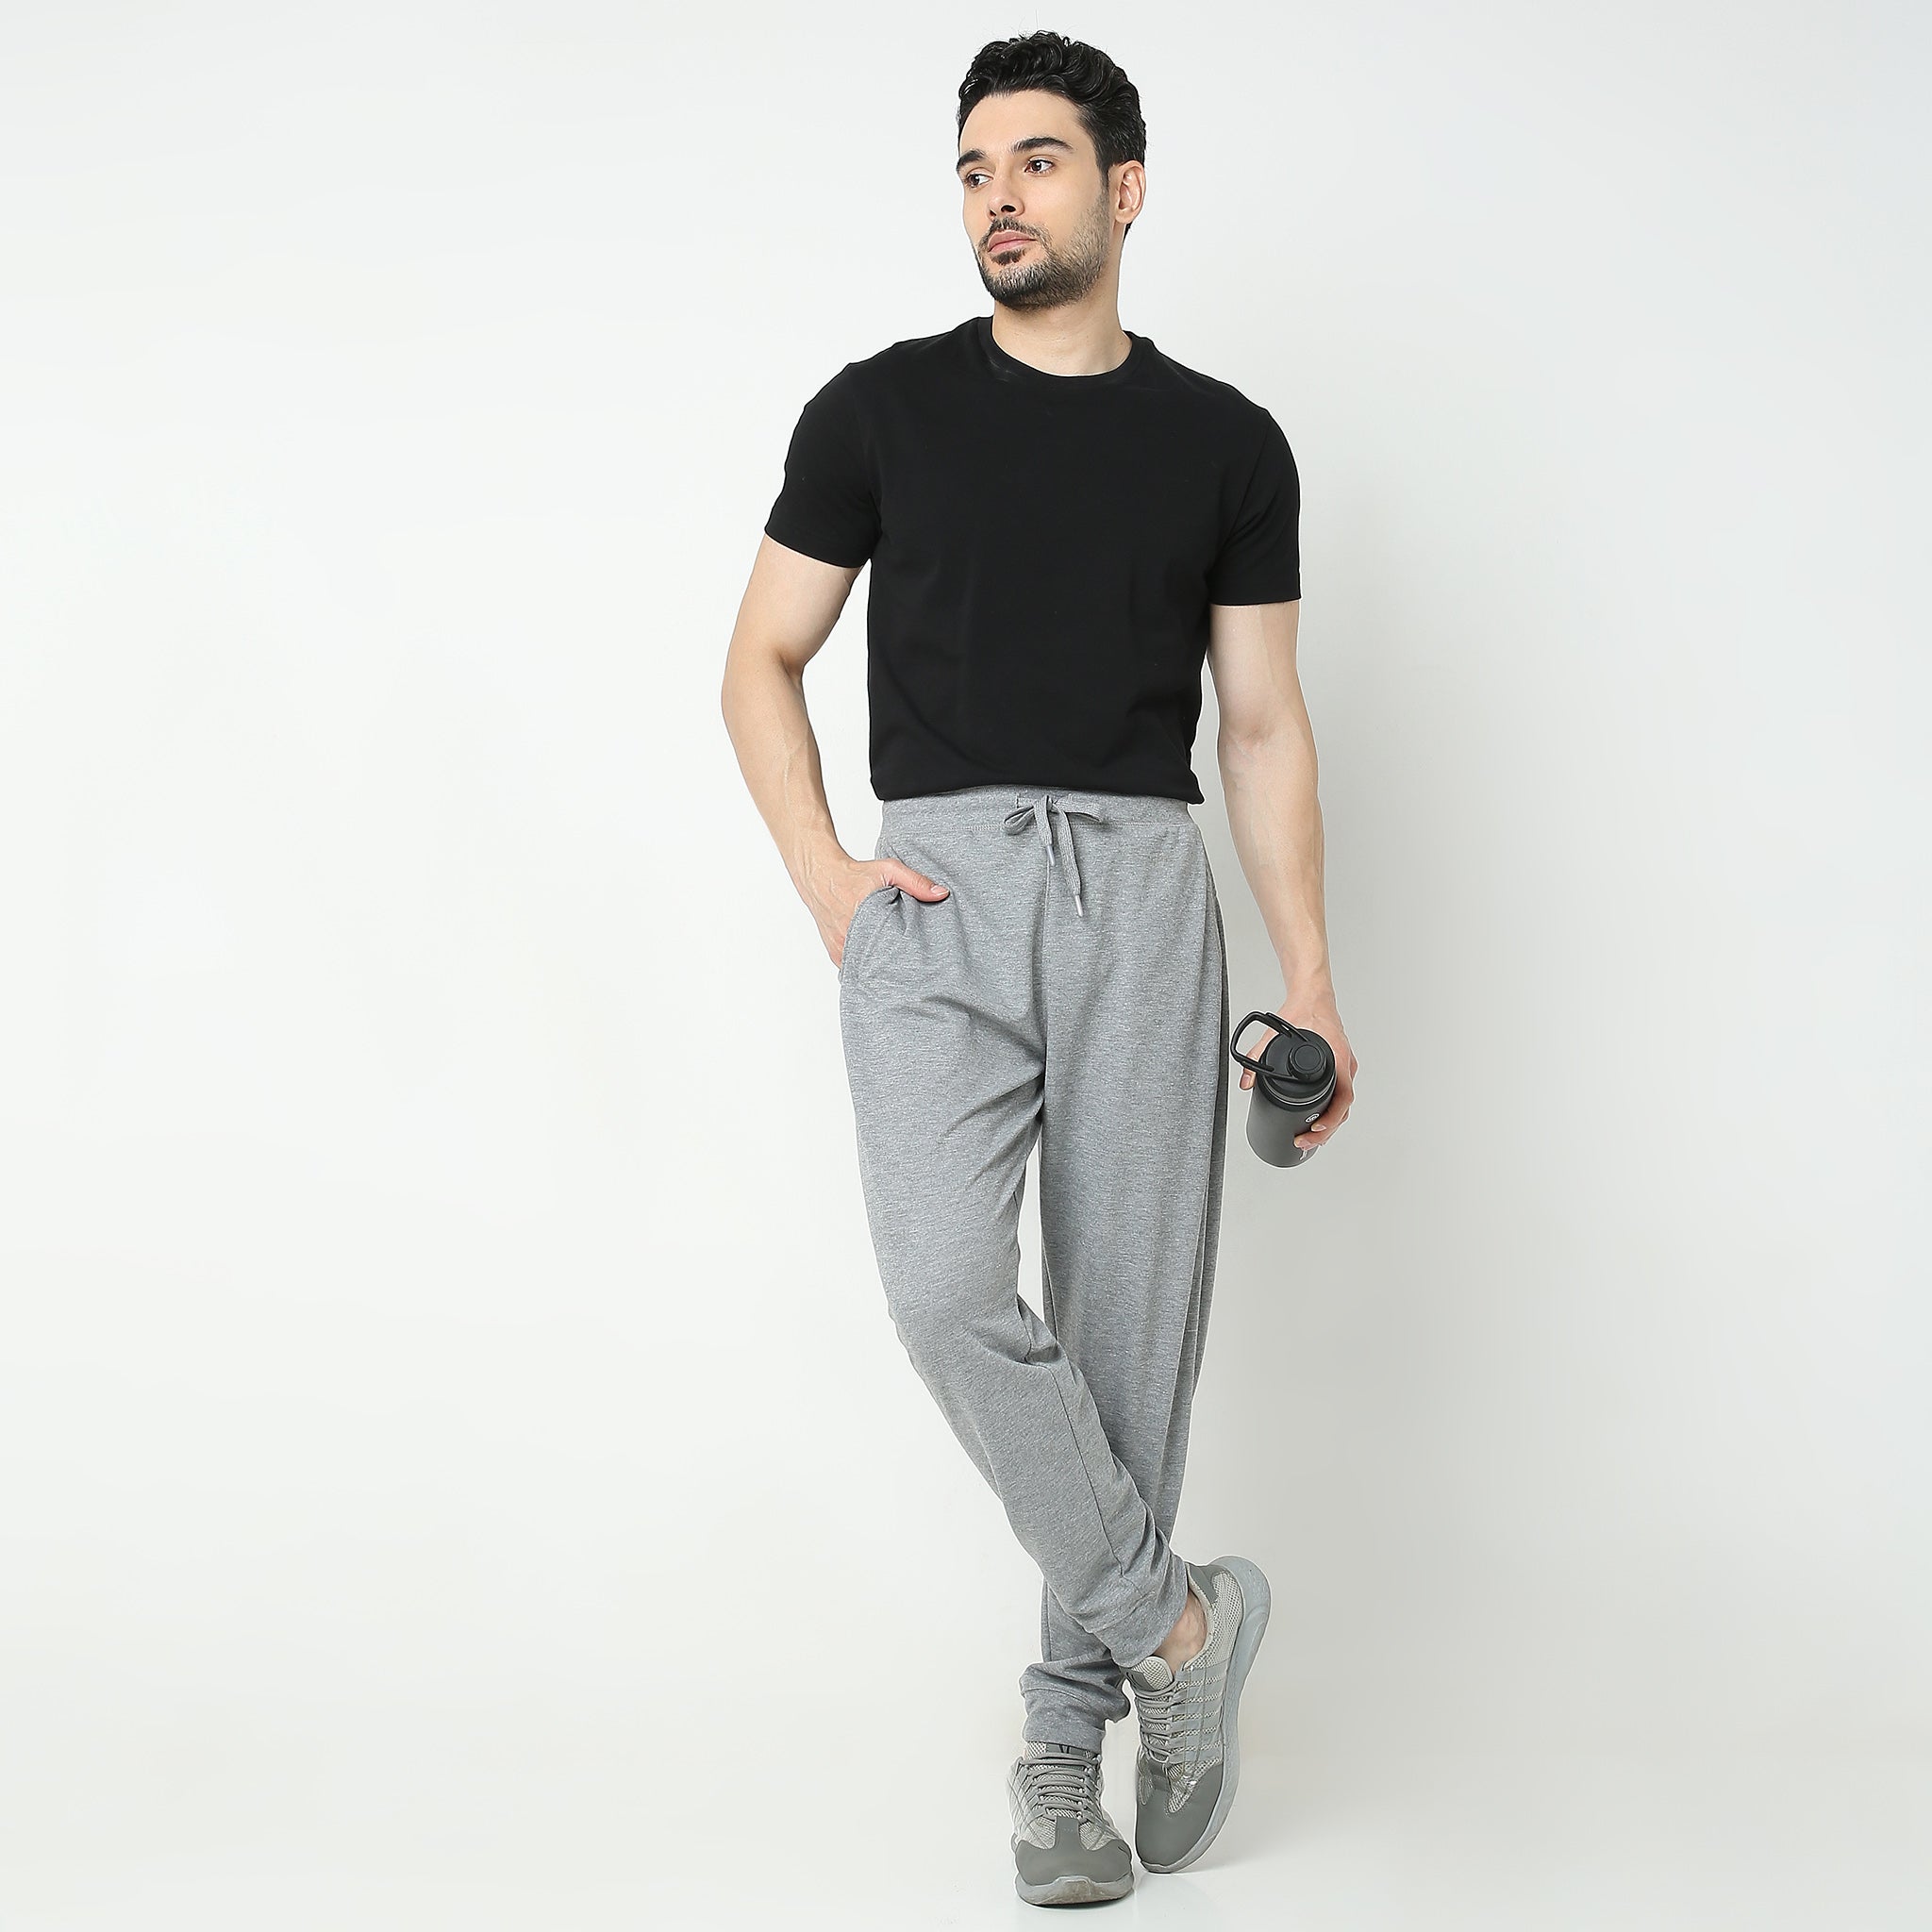 Bukser Solid Men Track Pants Multi colours - XL